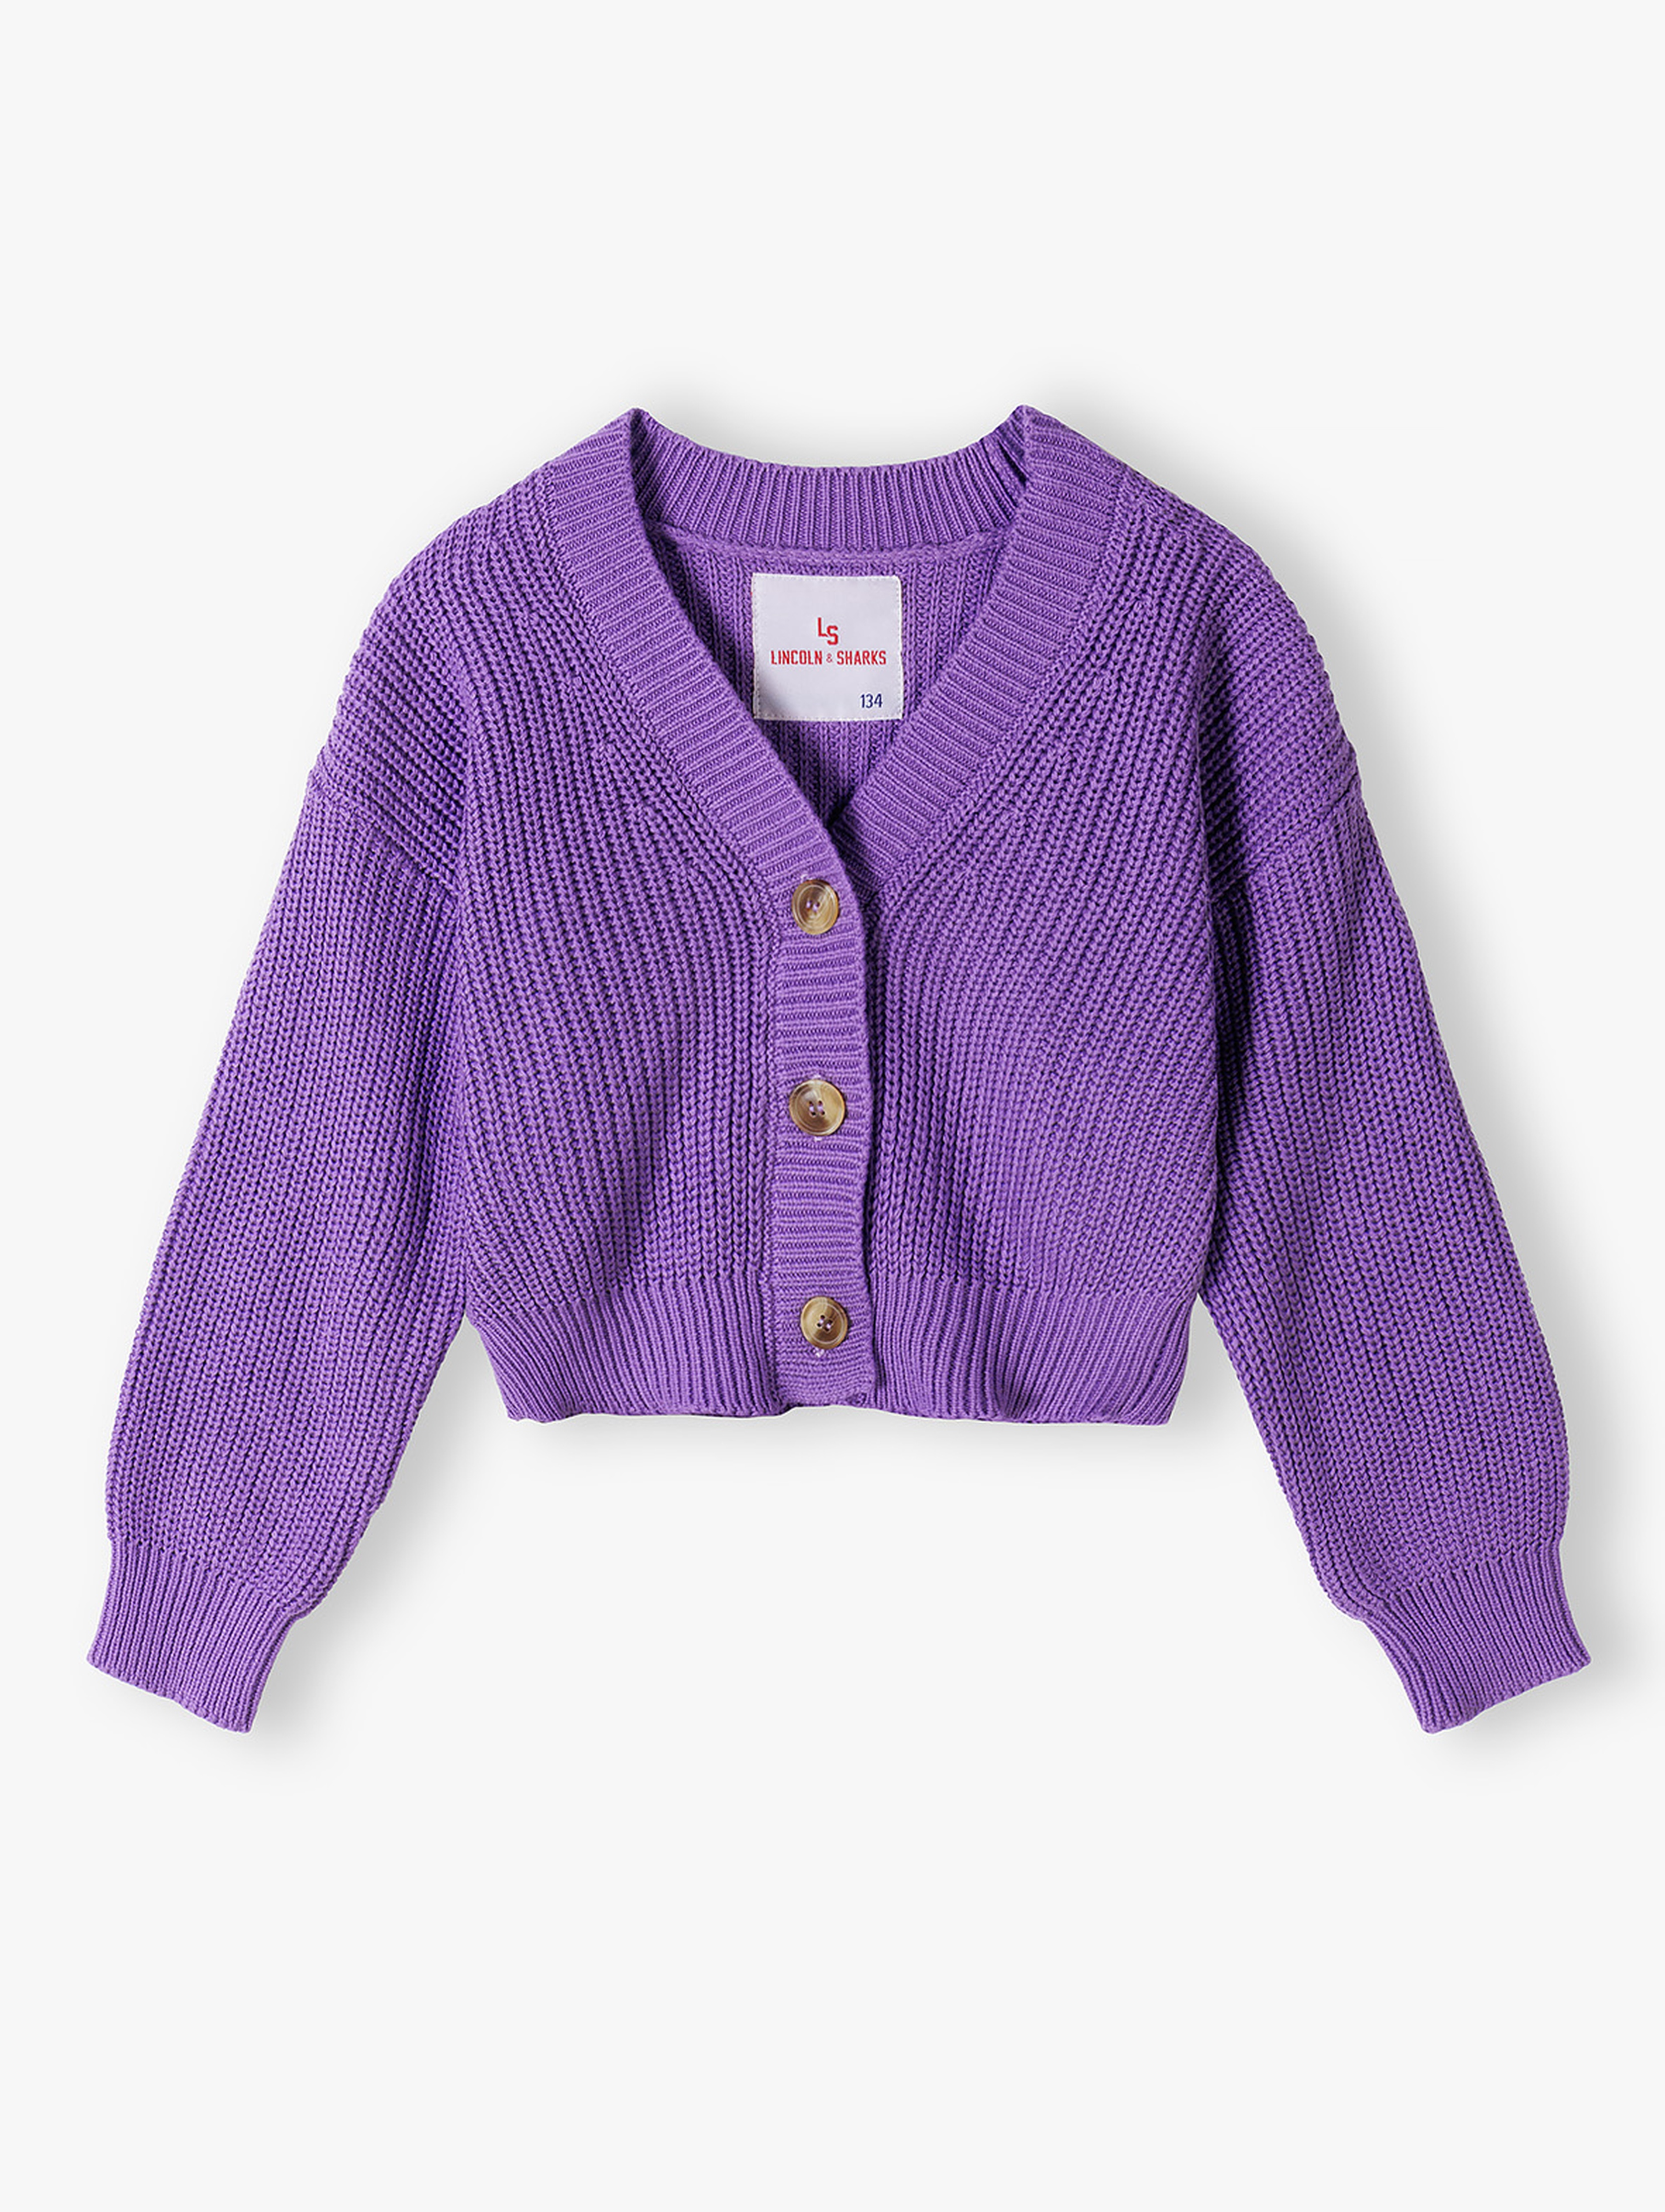 Fioletowy sweter dziewczęcy rozpinany